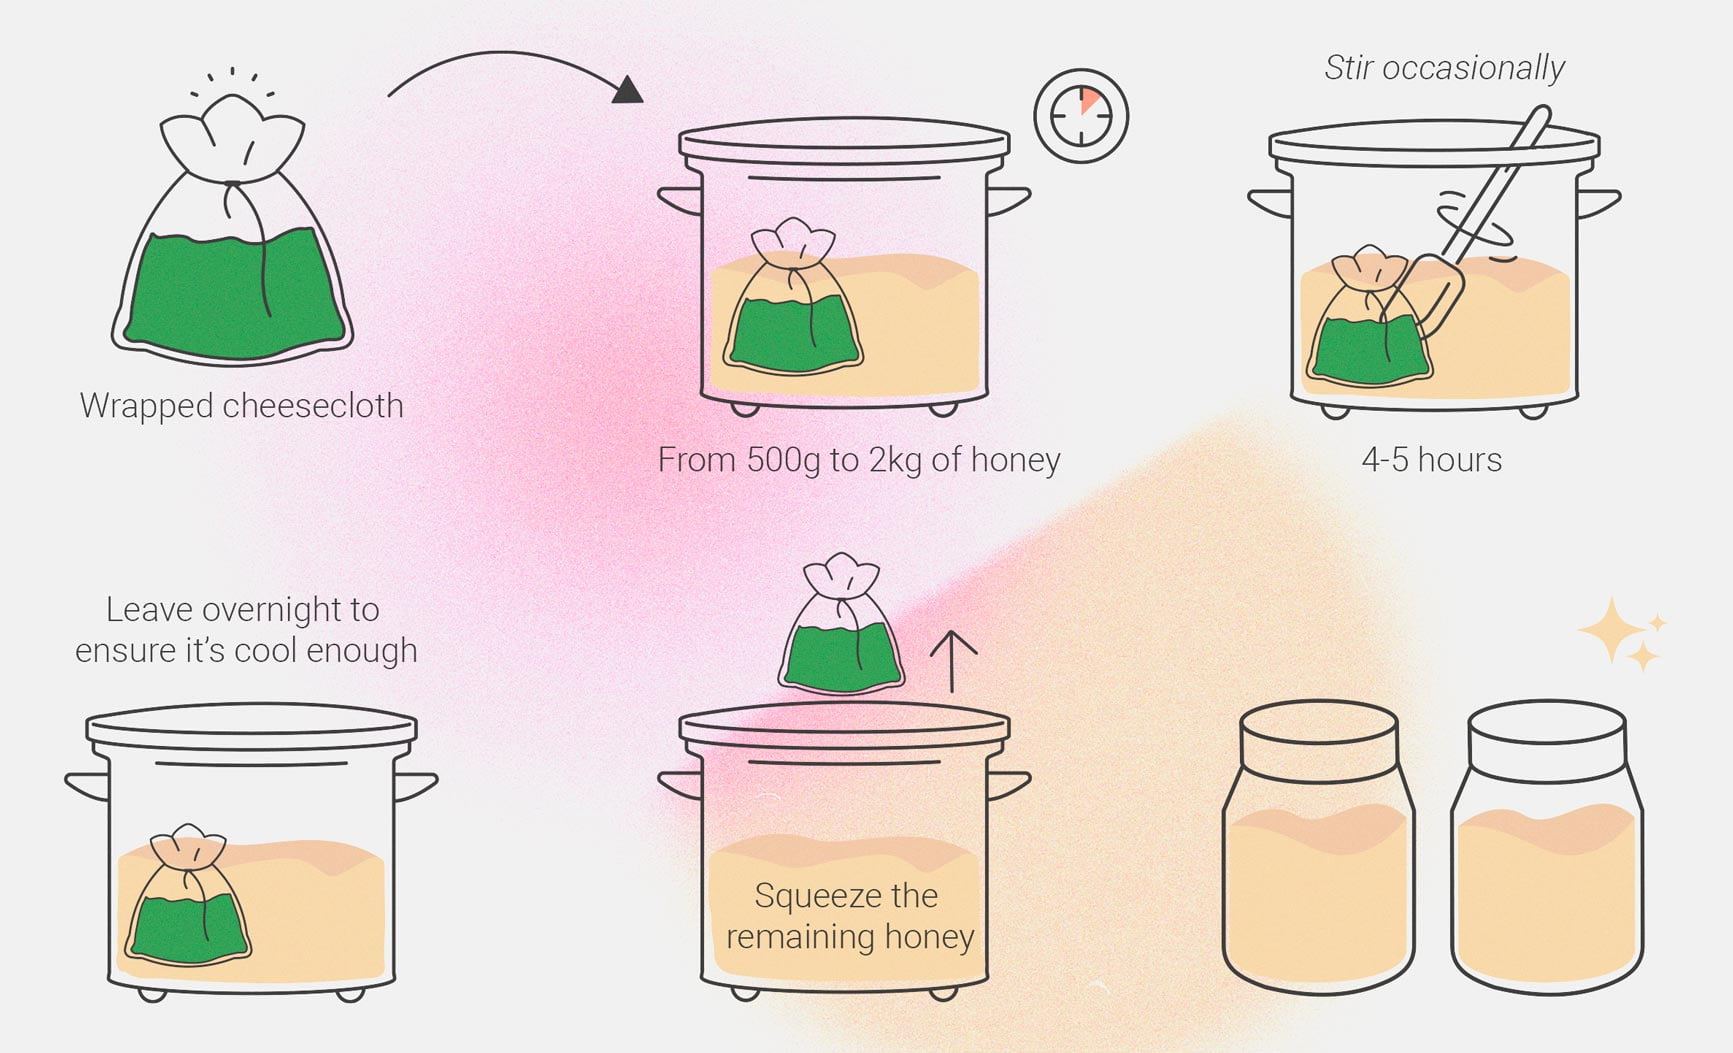 Comment préparer une teinture de cannabis au miel maison